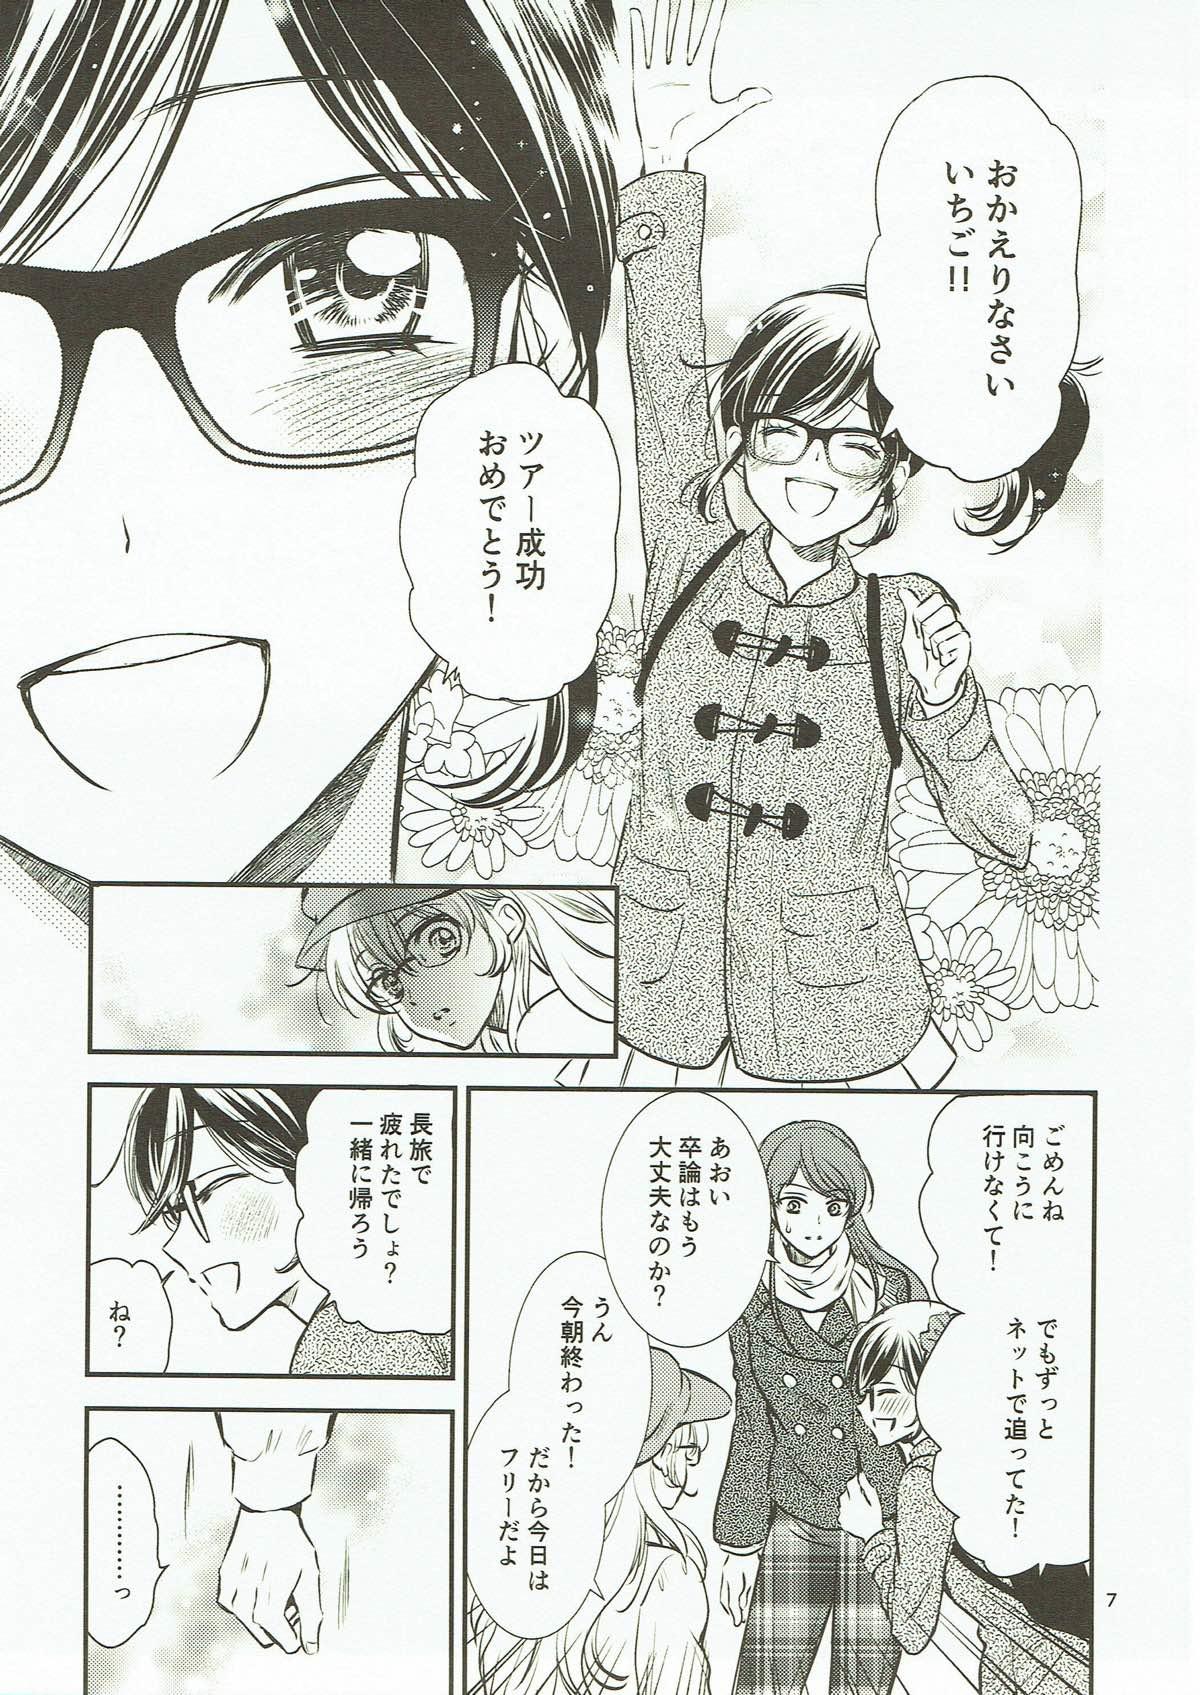 Naughty Eien Unit Kouhen - Aikatsu Blows - Page 6